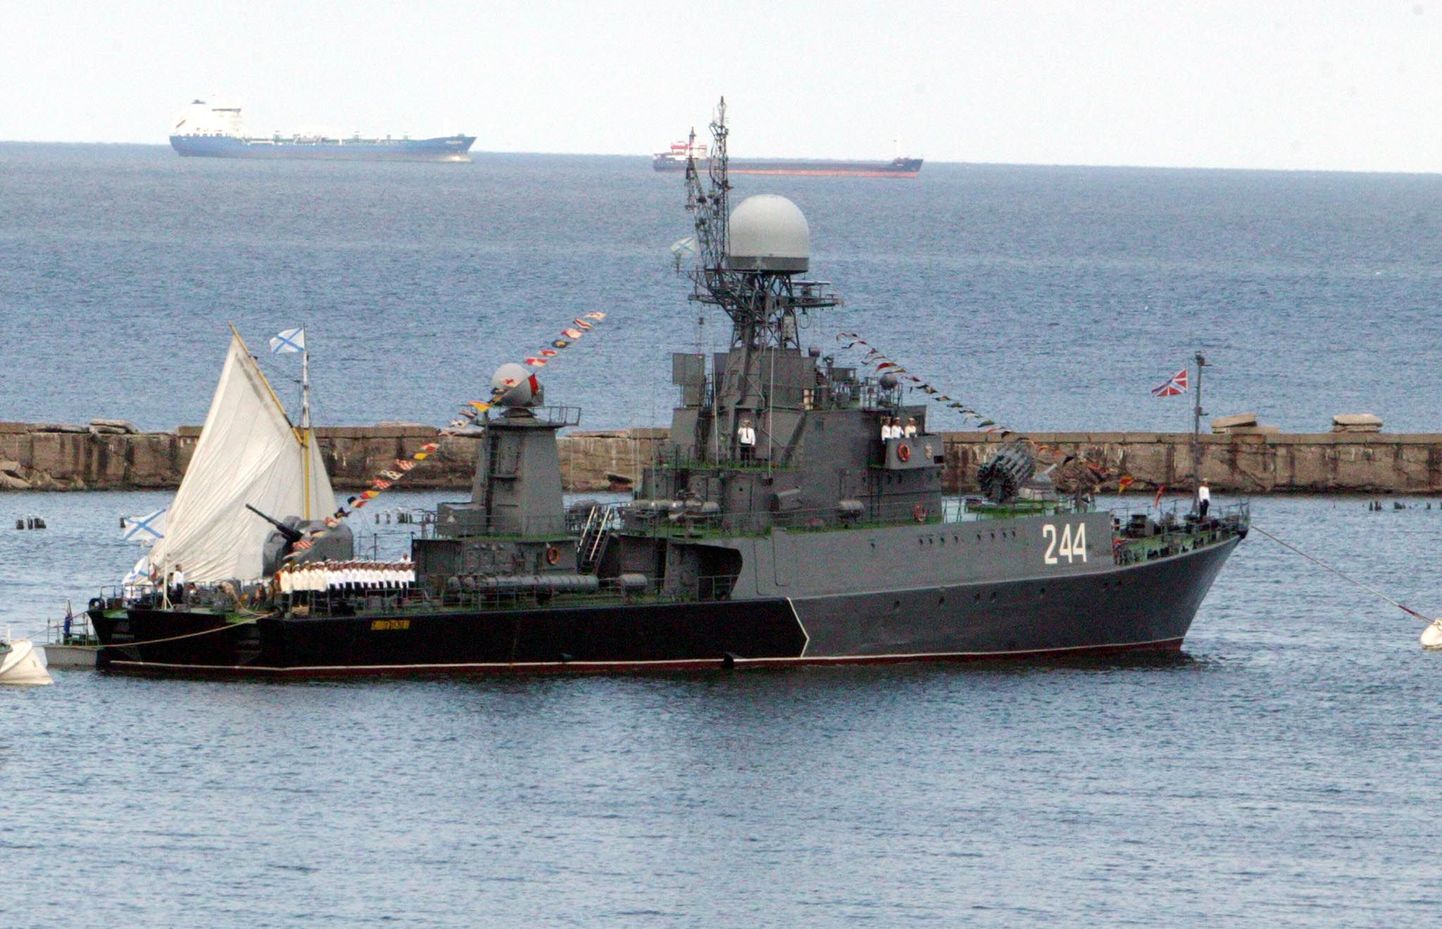 Vene mereväe väike allveelaevahävitaja MPK-105 väljumas Balti laevastiku baasist.